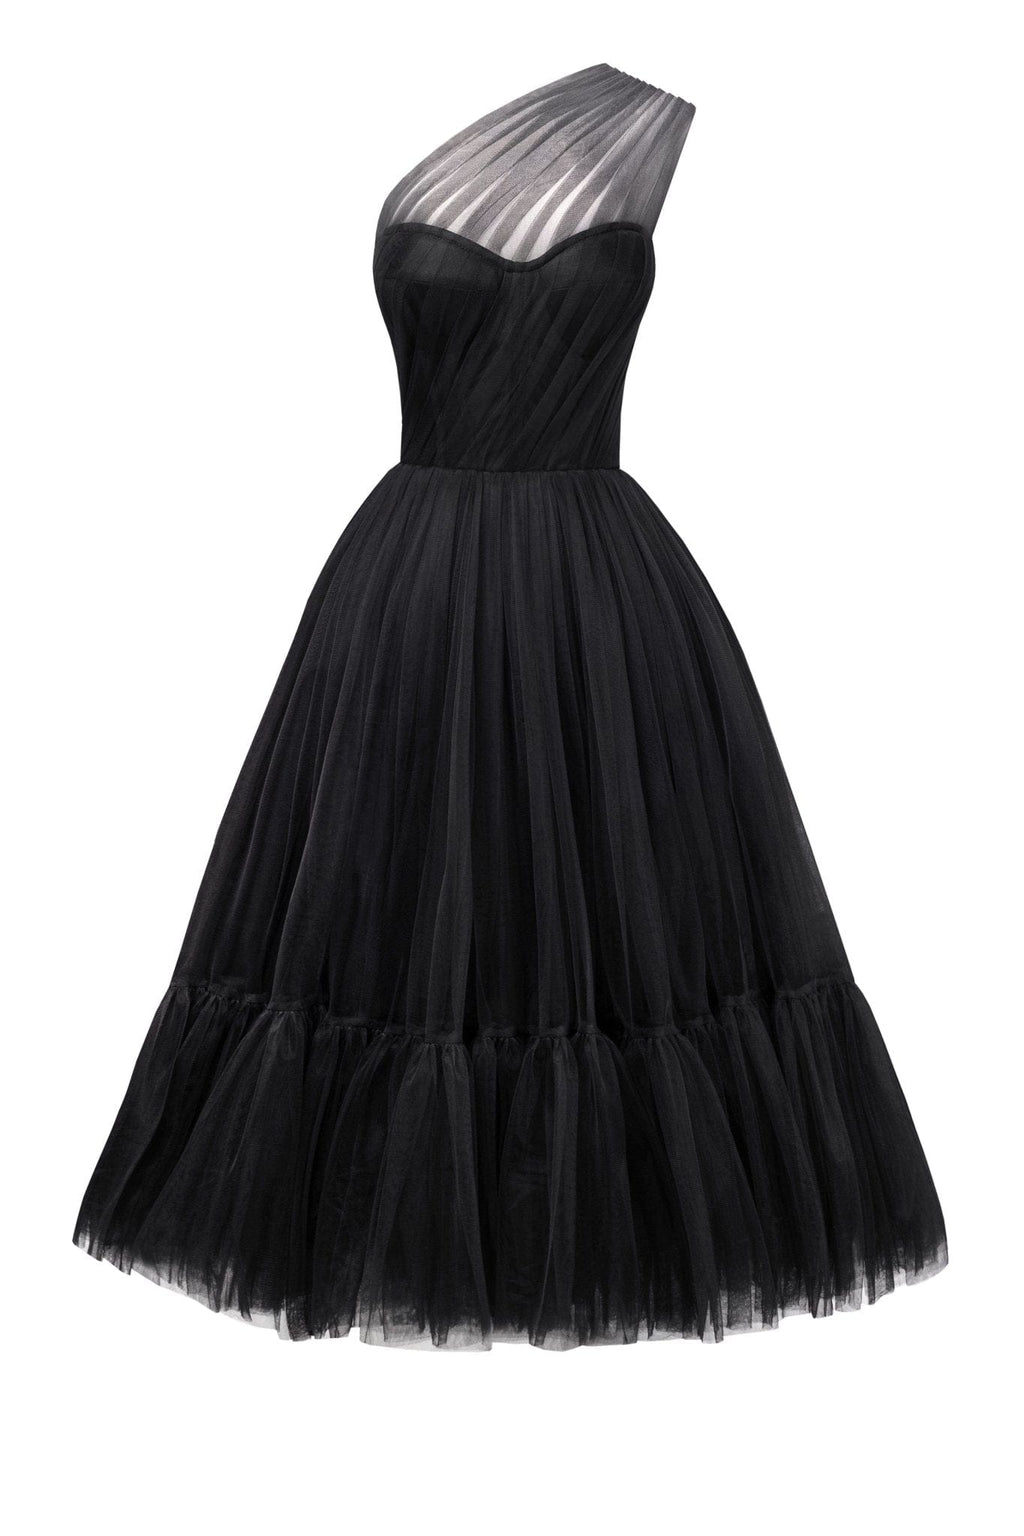 Black One-Shoulder Cocktail Tulle Dress - Milla